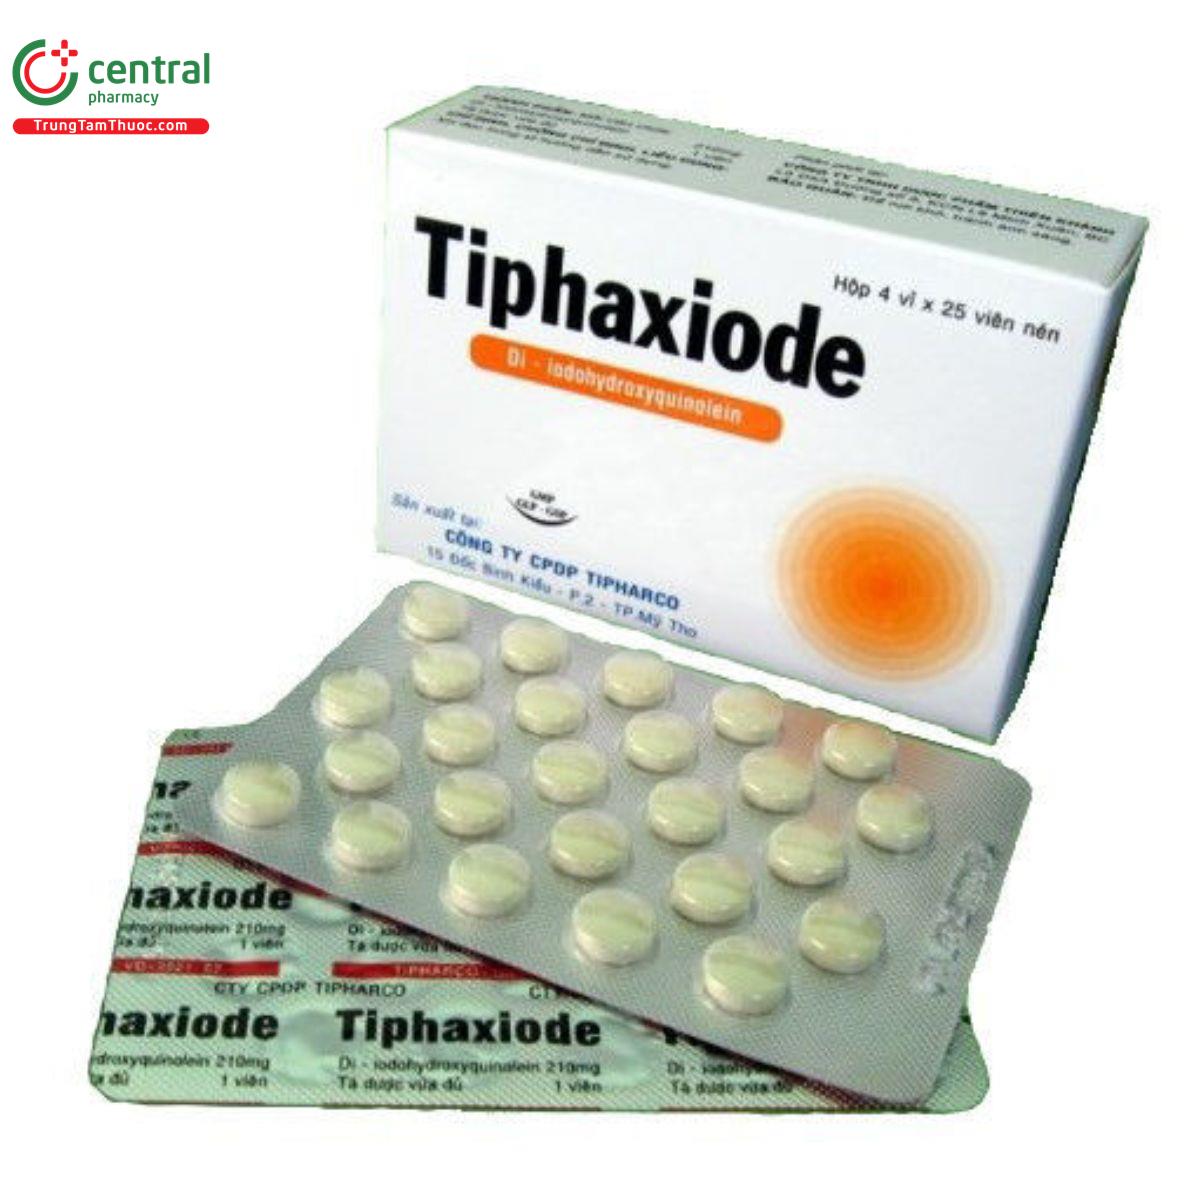 tiphaxiode 2 E1060